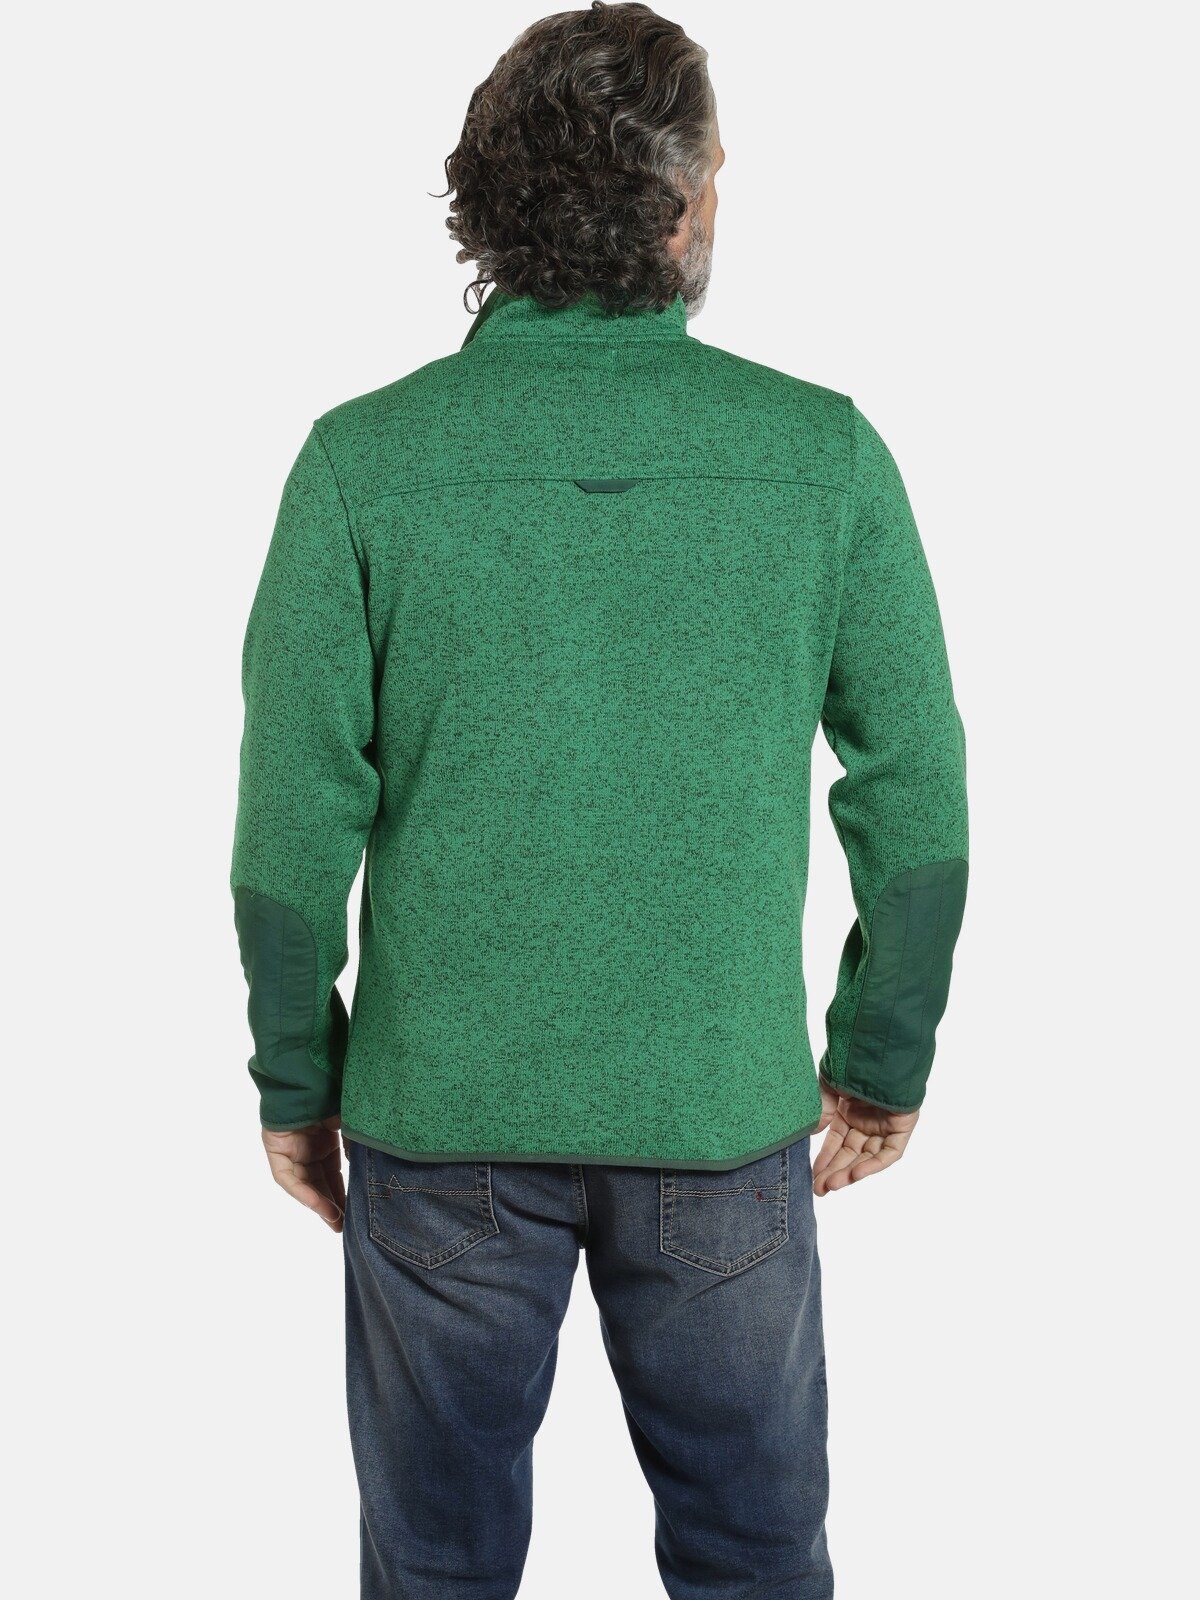 Jan Vanderstorm Troyer DAUBE Fit Comfort grün weiches Material